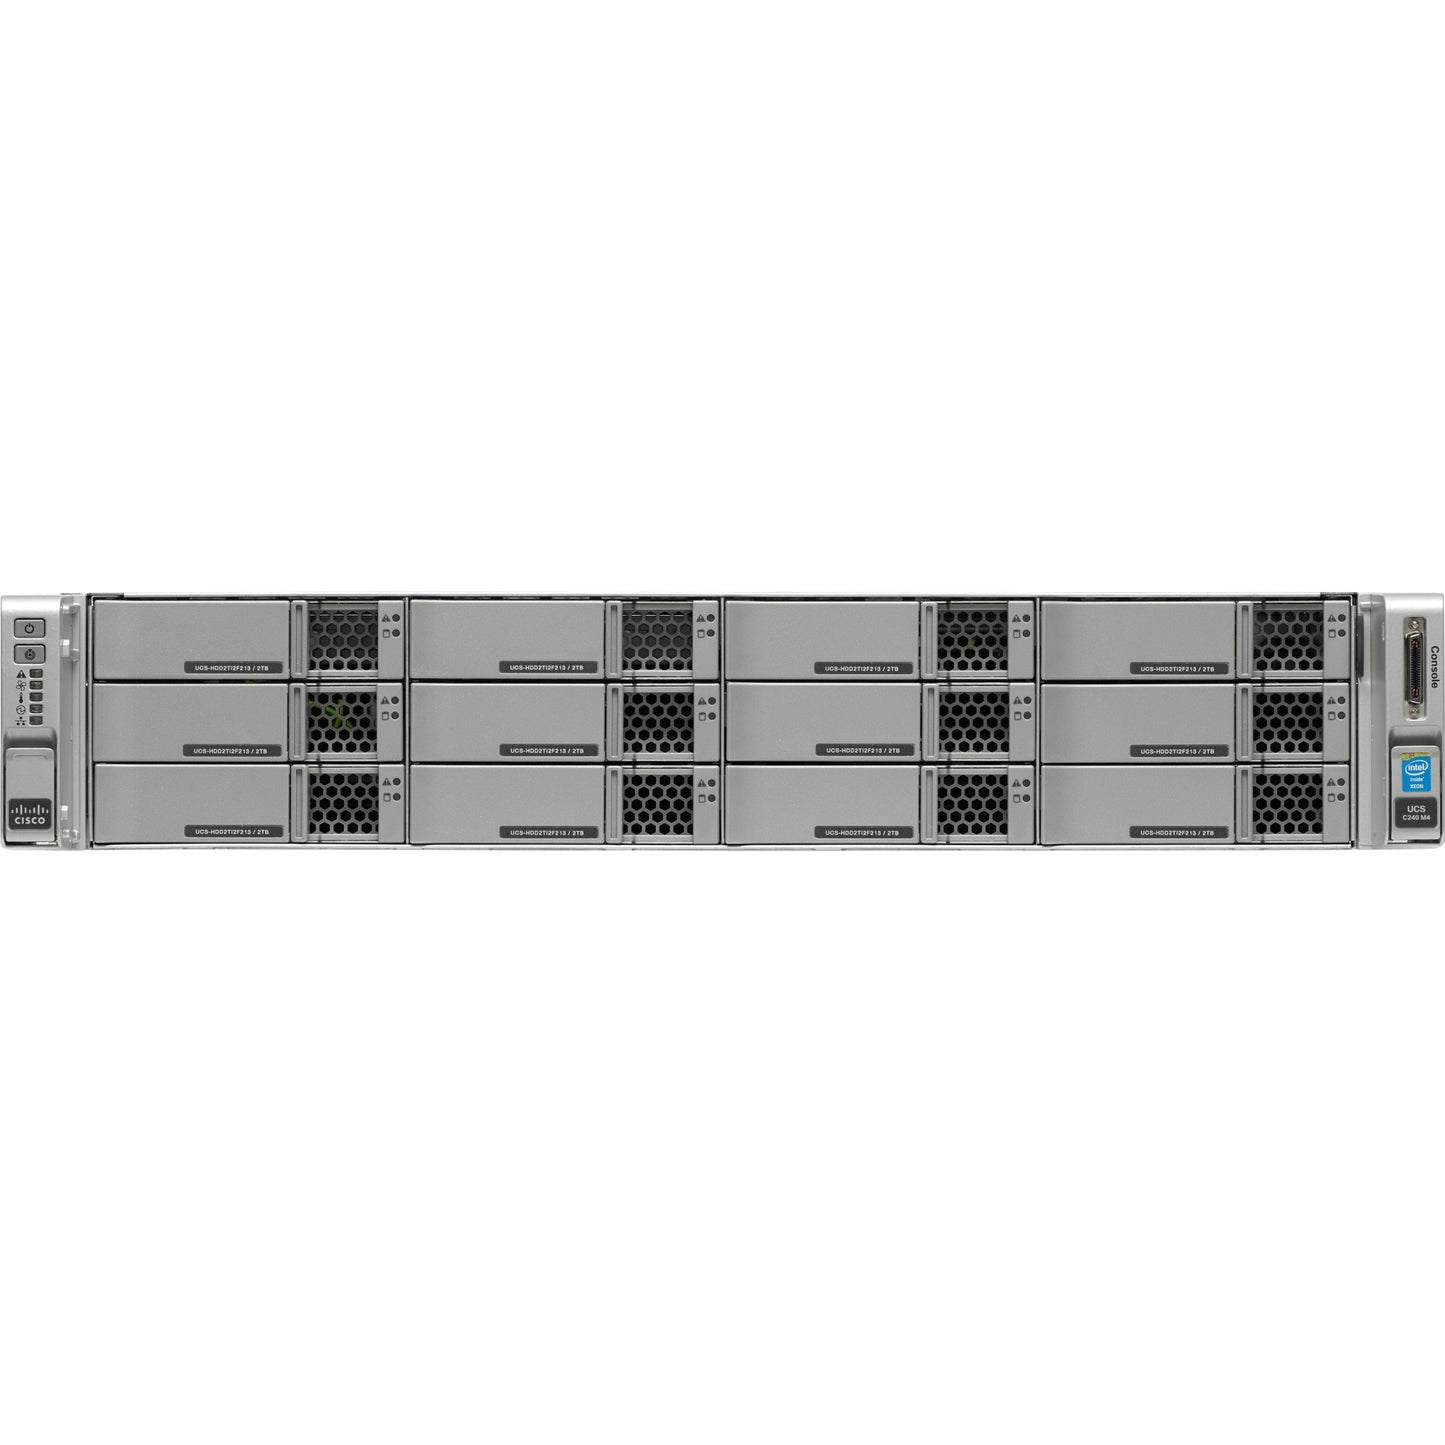 Cisco C240 M4 2U Rack Server - 2 x Intel Xeon E5-2630 v3 2.40 GHz - 128 GB RAM - Serial ATA Controller